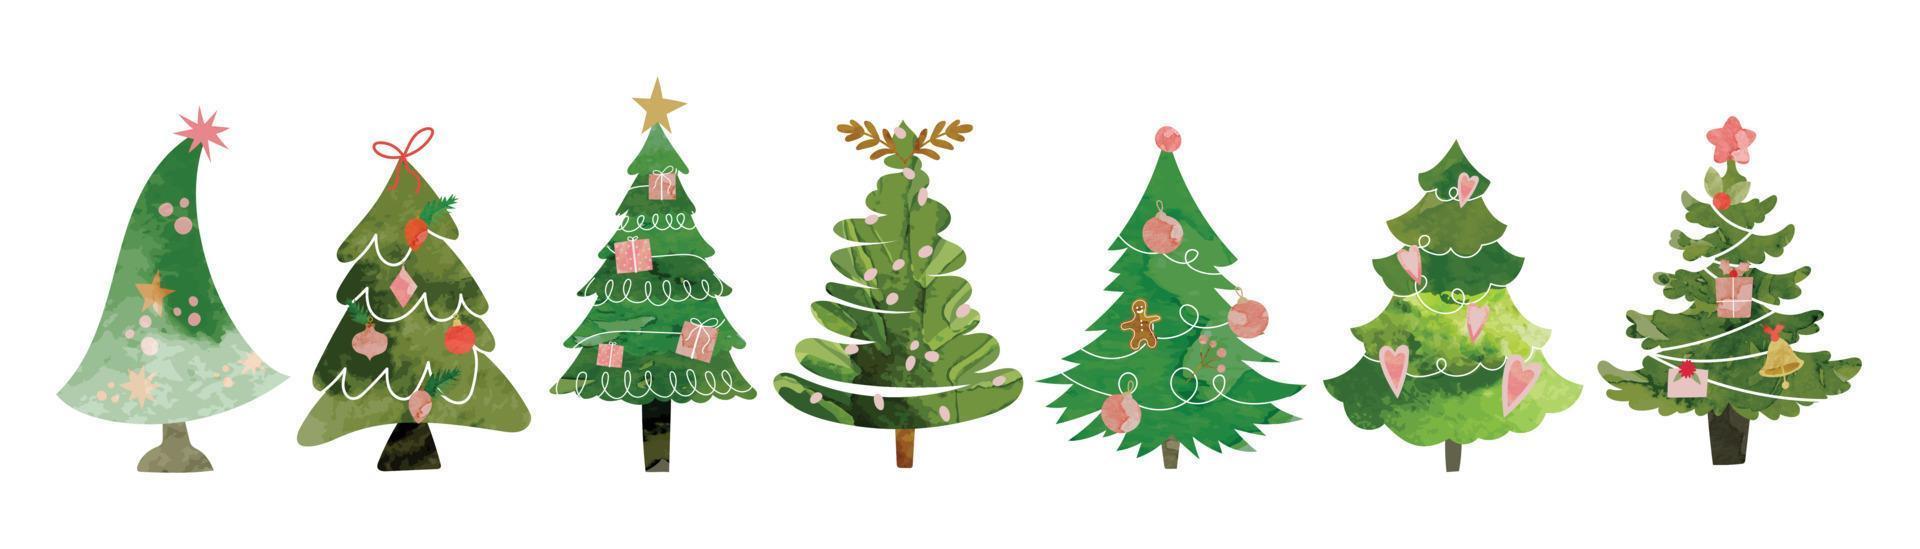 reeks van waterverf decoratief Kerstmis bomen vector illustratie. elementen van sier- ballen, guirlande, ster, presenteert, hulst, pijnboom bladeren. ontwerp voor kaart, grappig, afdrukken, poster, banier, decoratie.